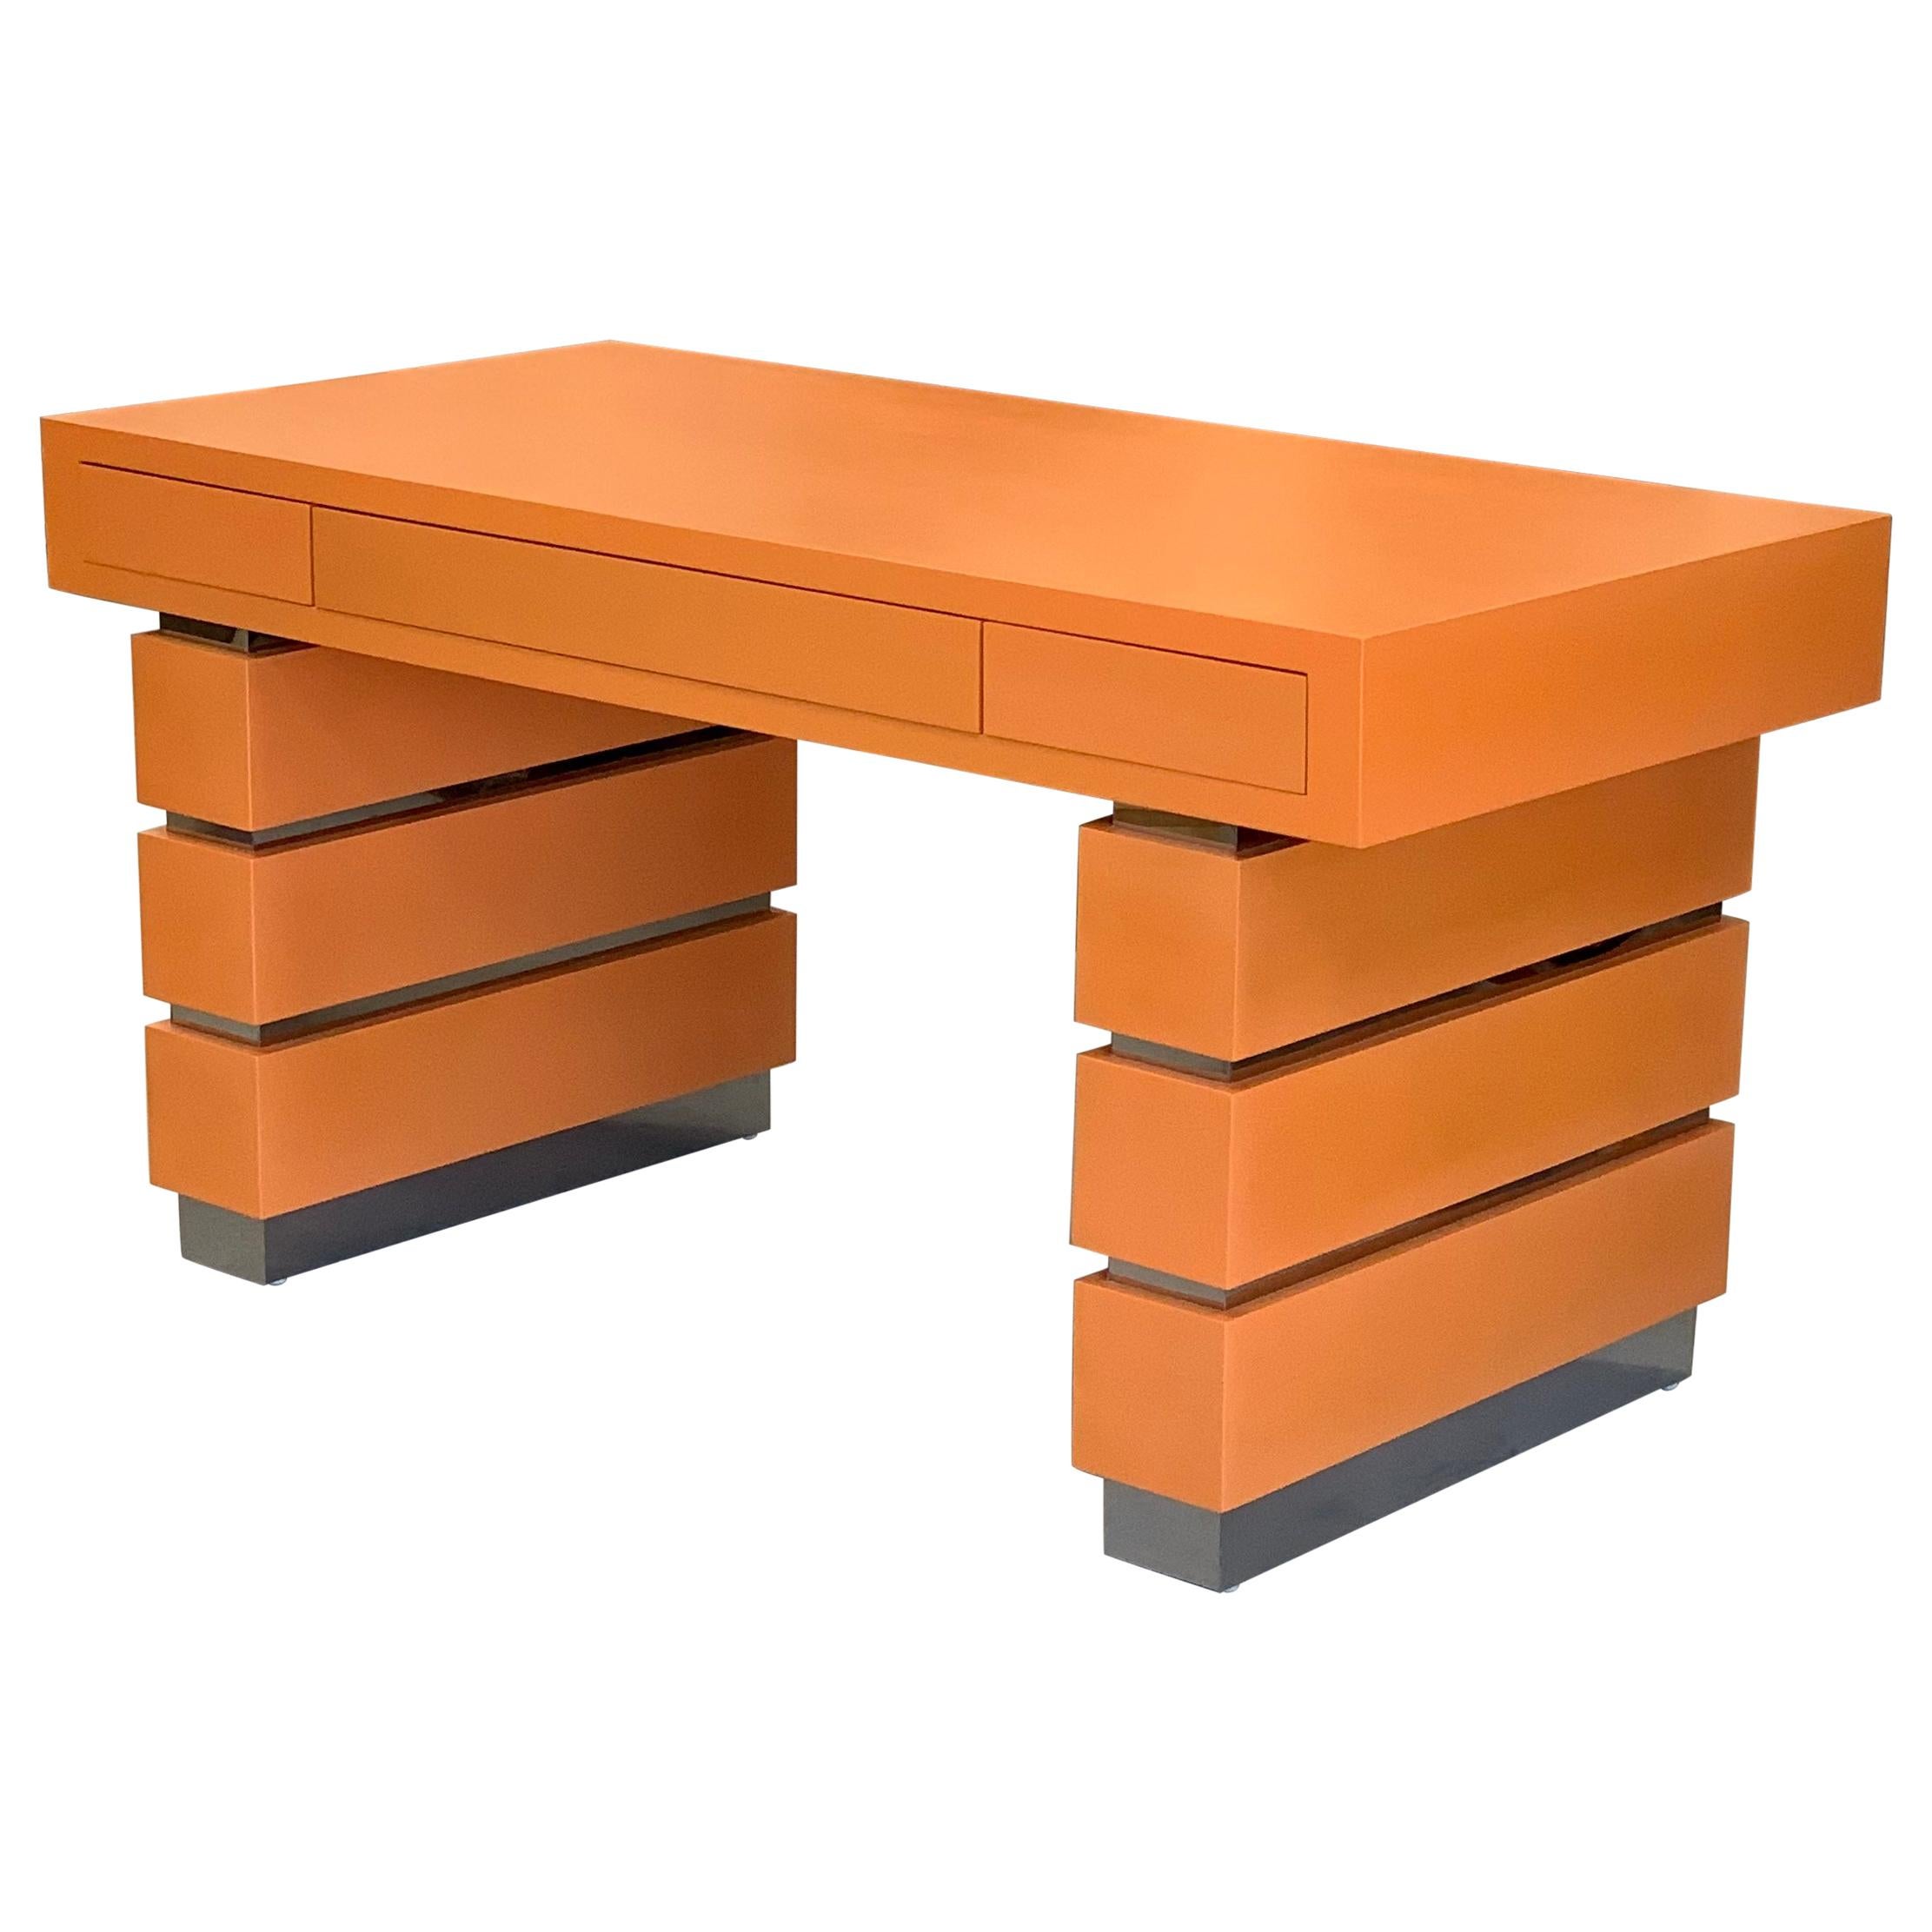 Bridges over Time Originals Custom Orange Desk